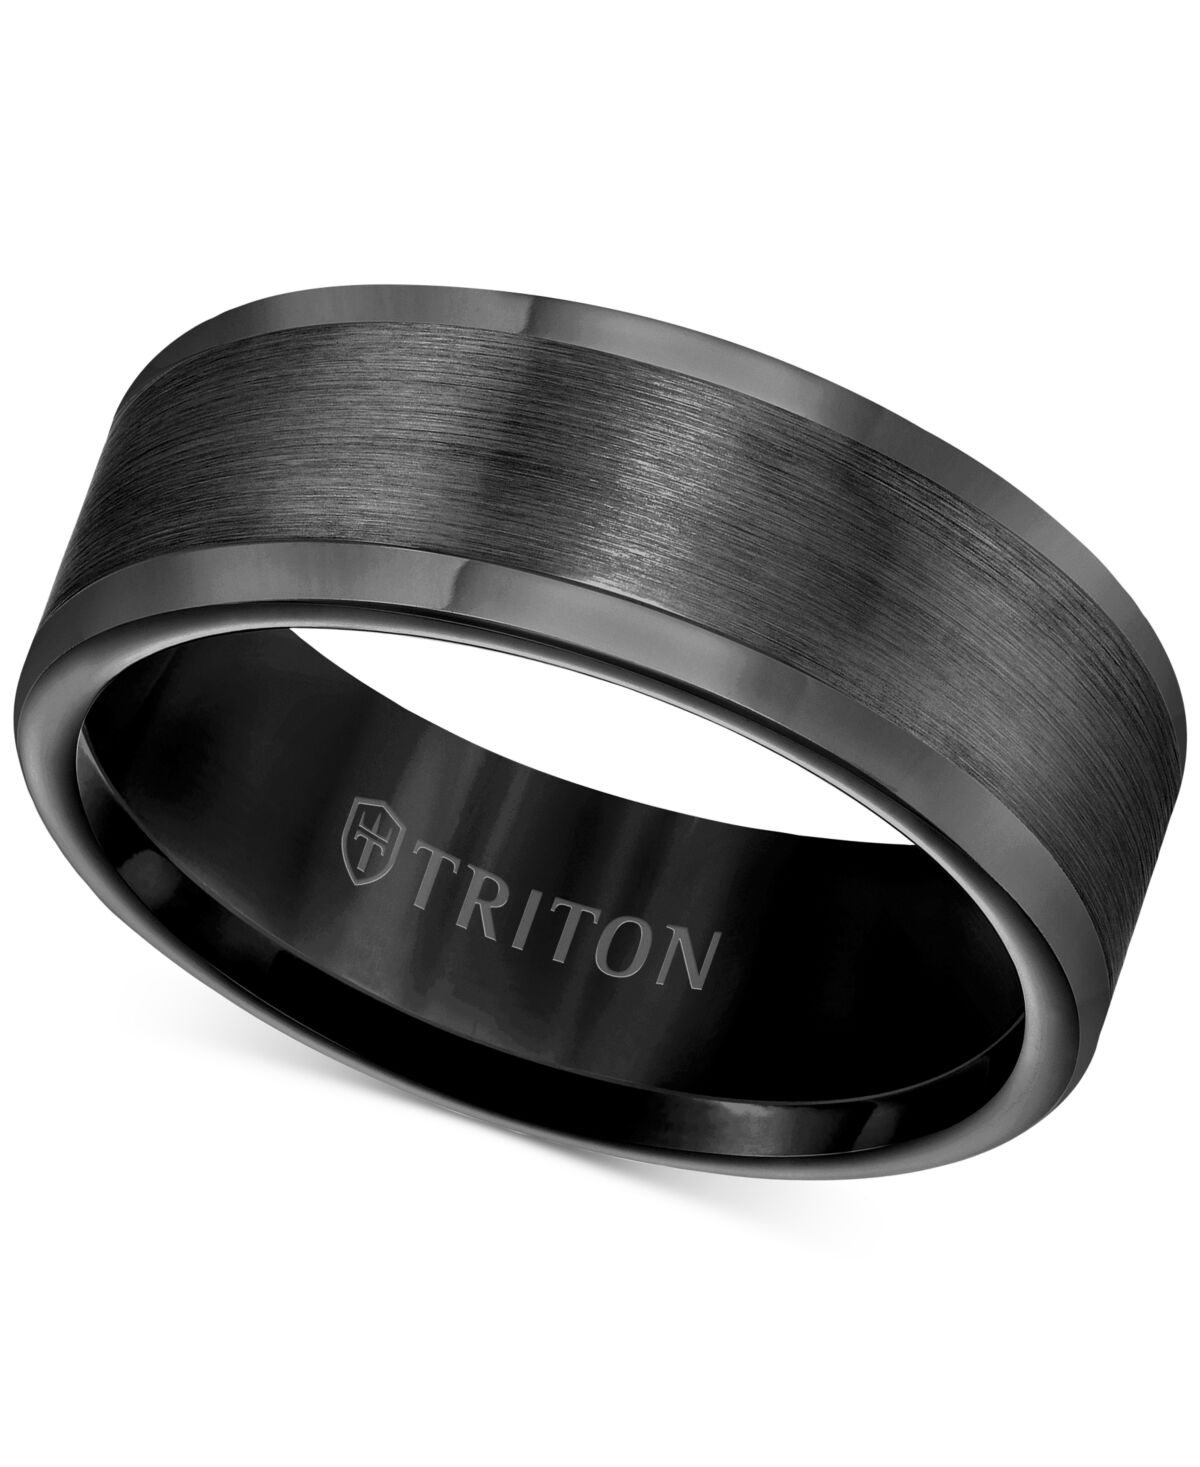 Triton Men's Ring, 8mm Wedding Band in White or Black Tungsten - Black Tungsten